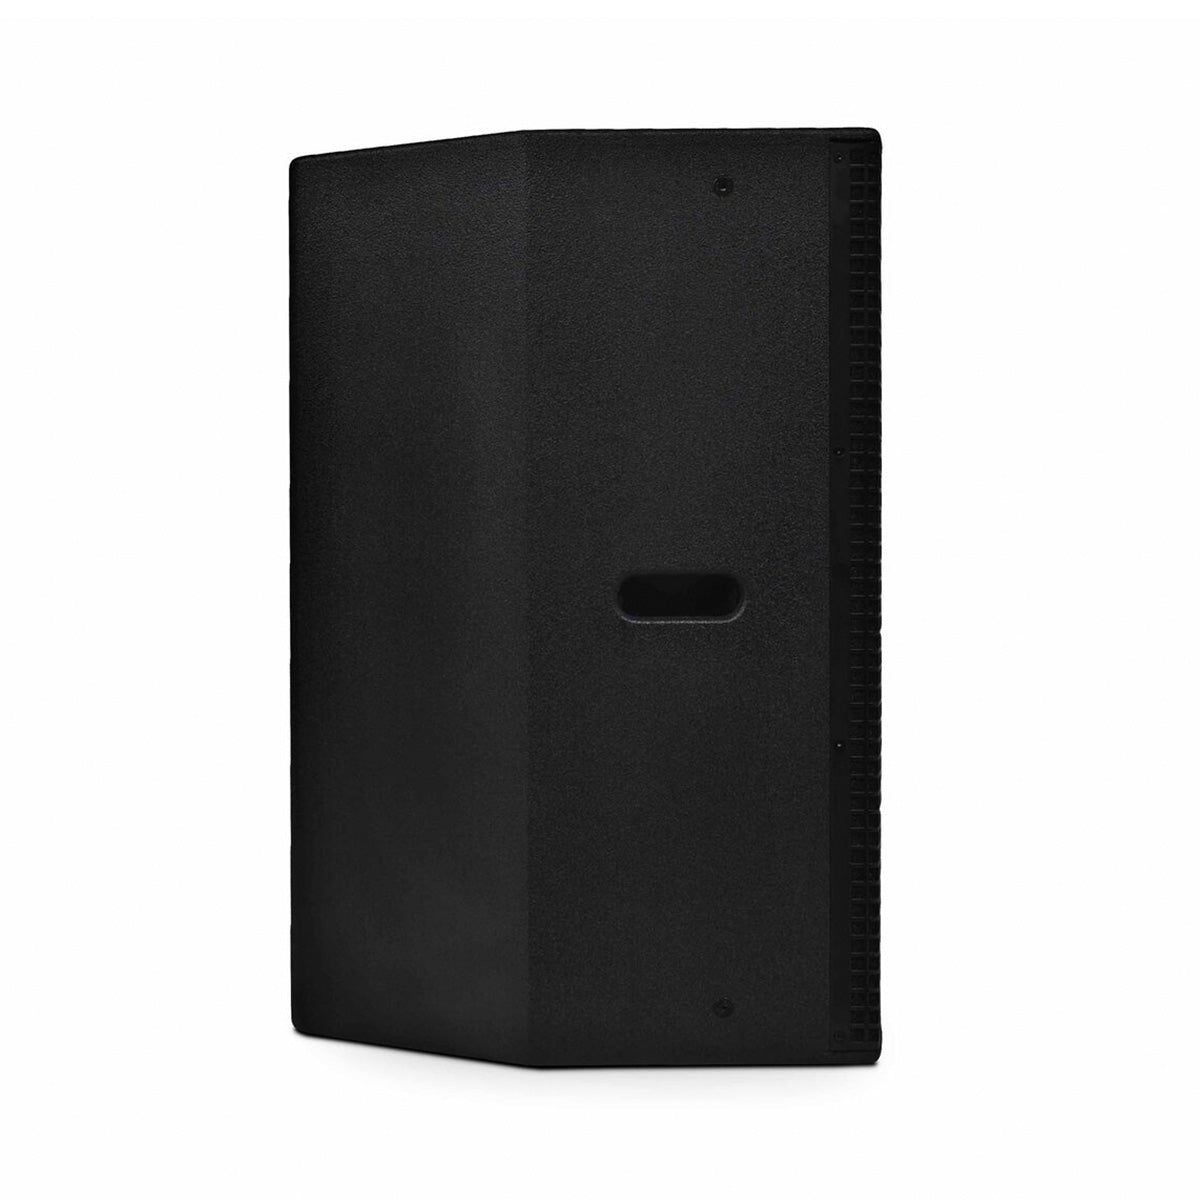 Passive Full range 12" Speaker GA1201